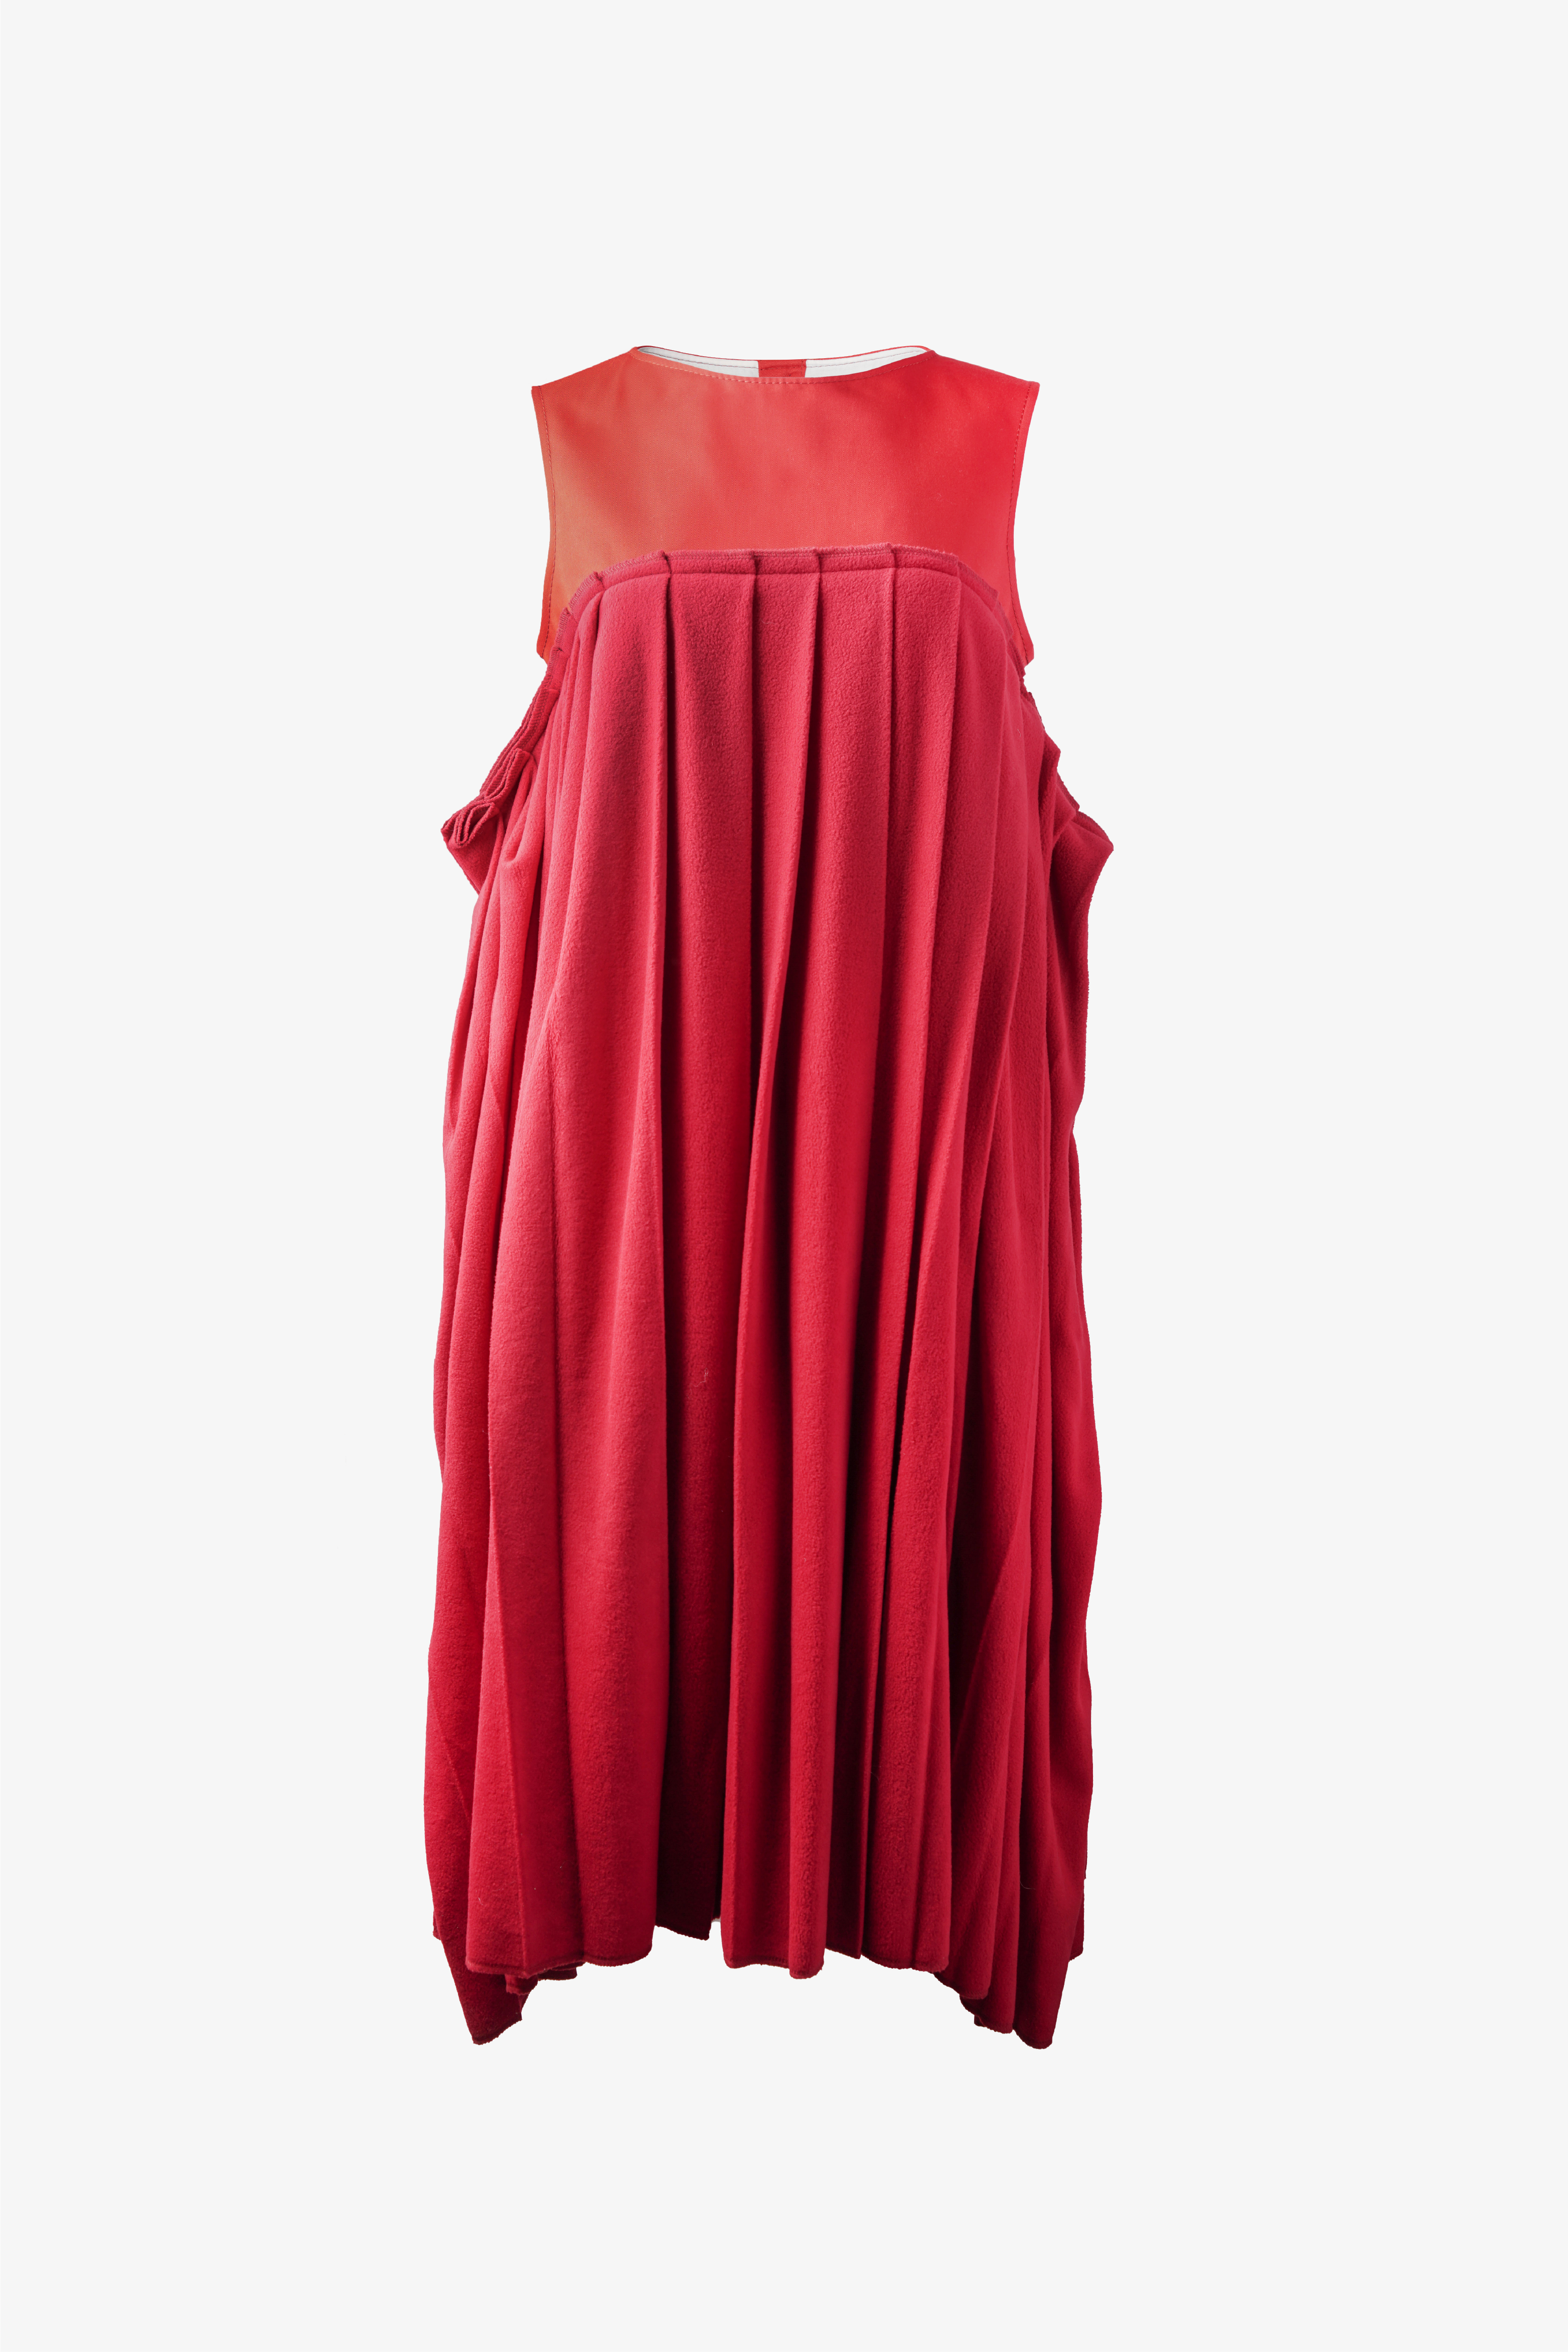 Selectshop FRAME - COMME DES GARÇONS TRICOT Dress Outerwear Dubai